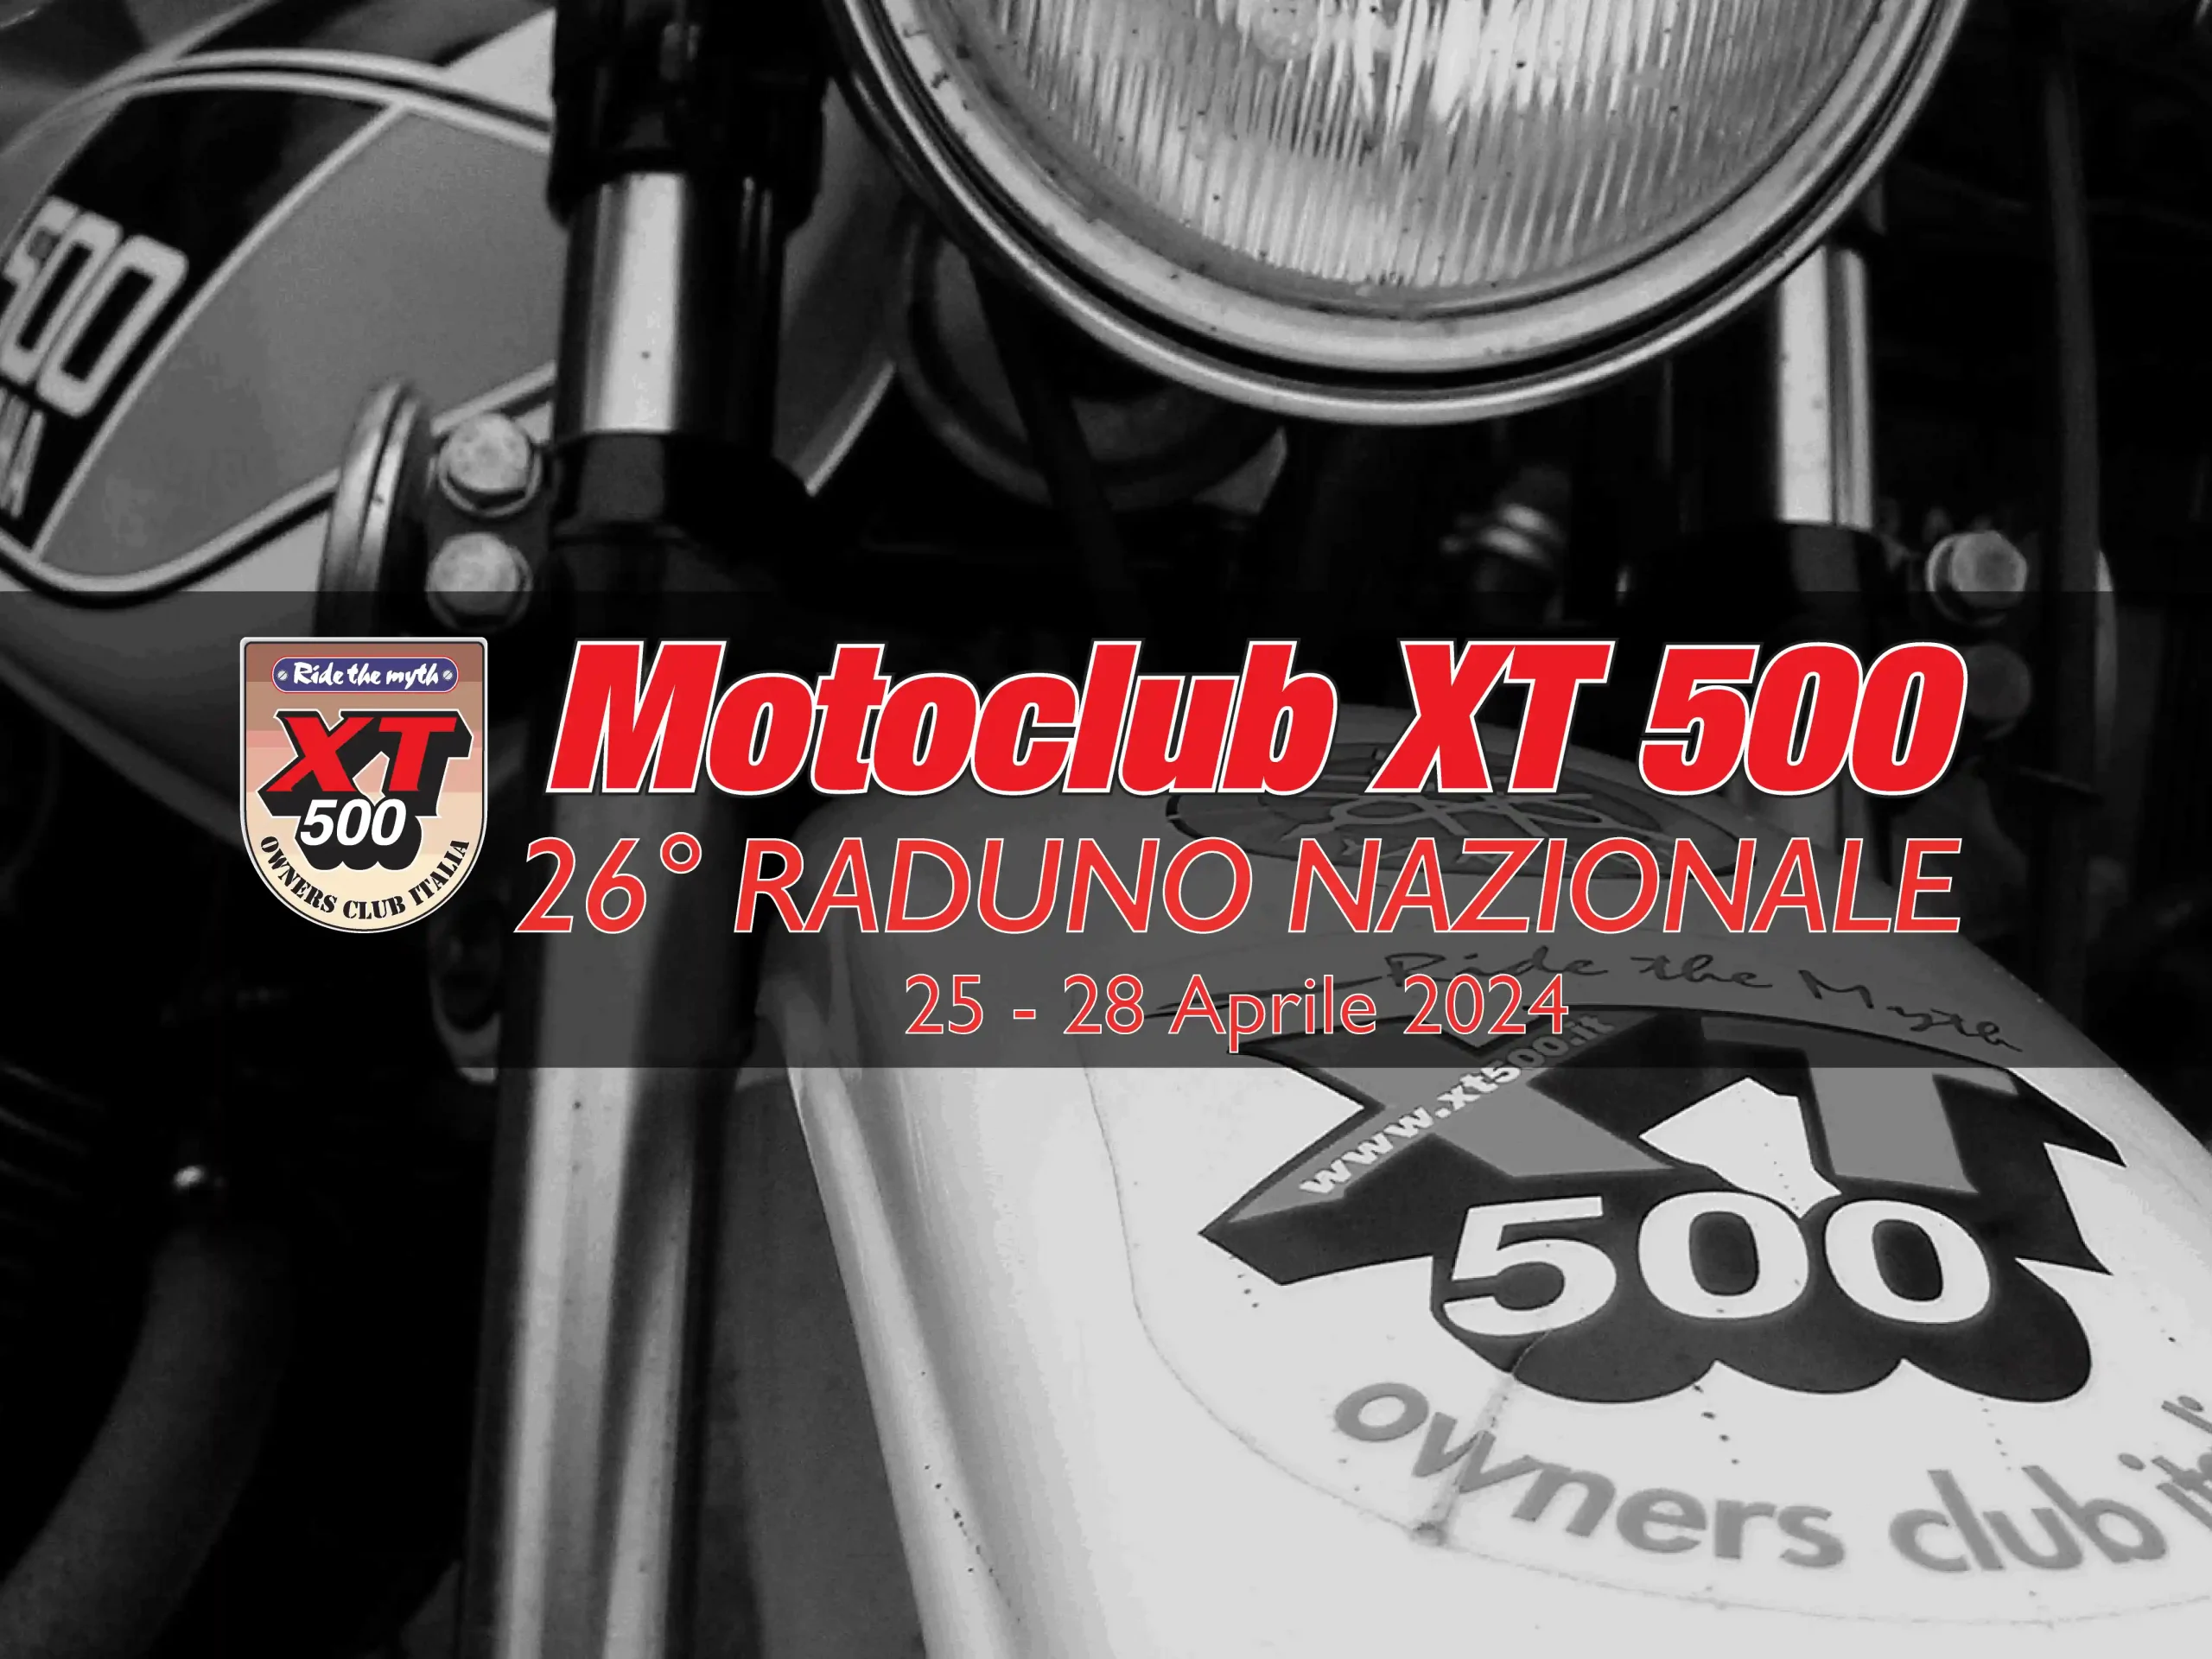 Yamaha xt500 raduno 26 italia